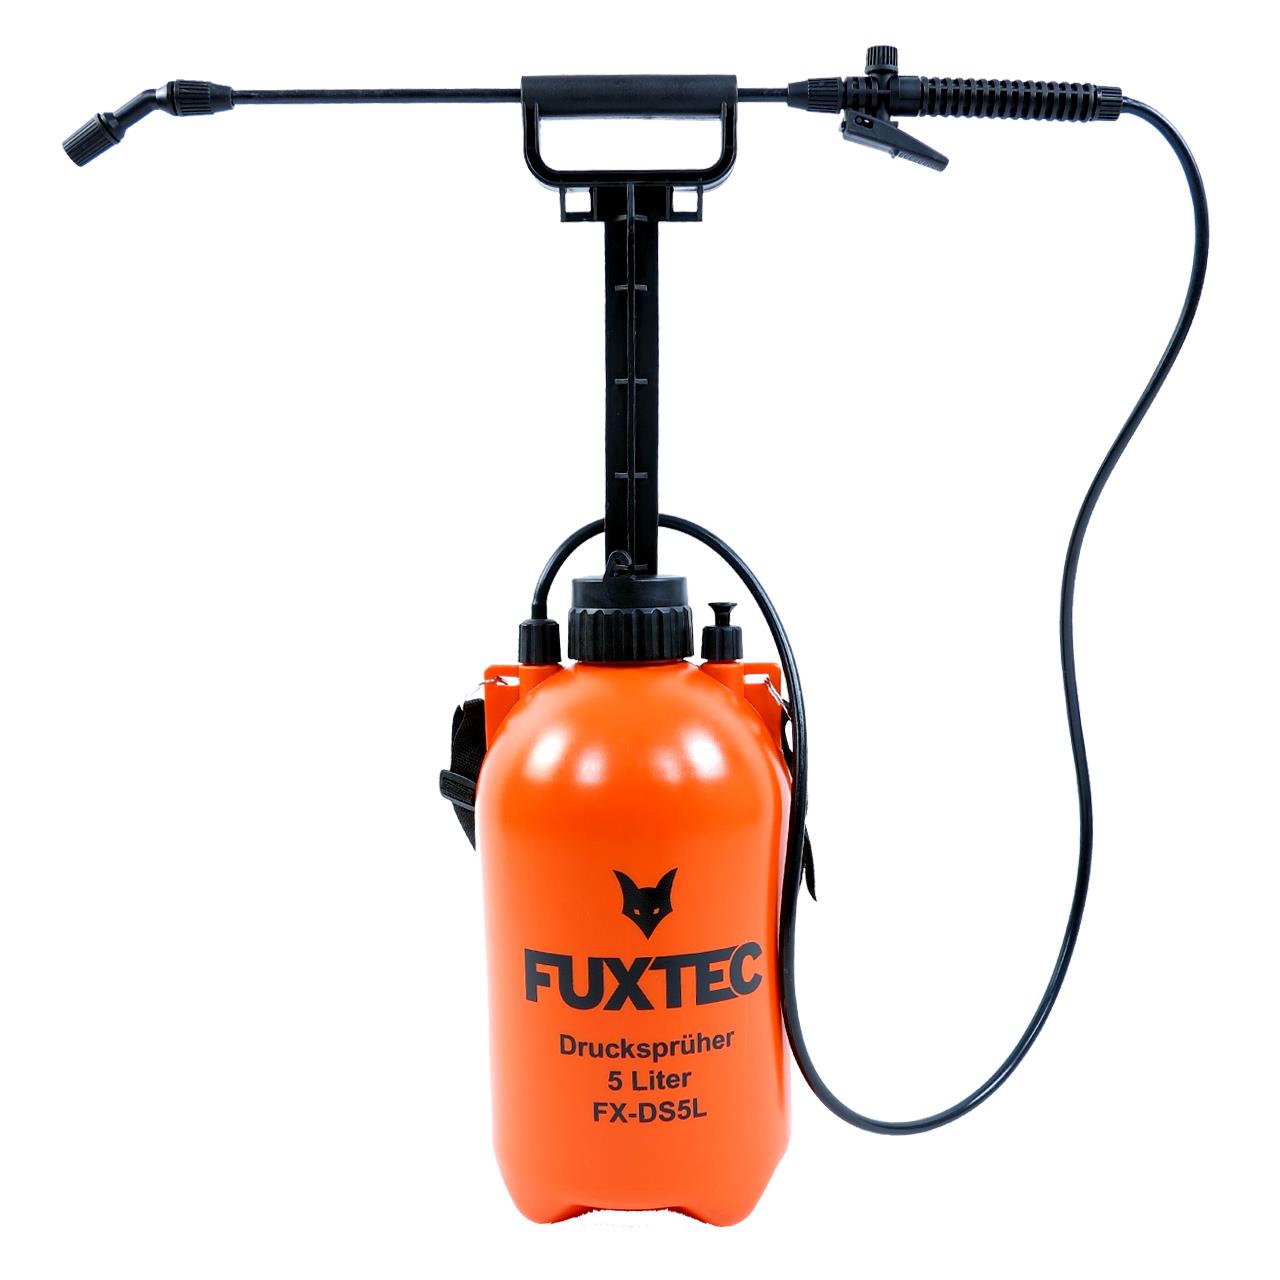 FUXTEC pressure sprayer 5 litres FX-DS5L